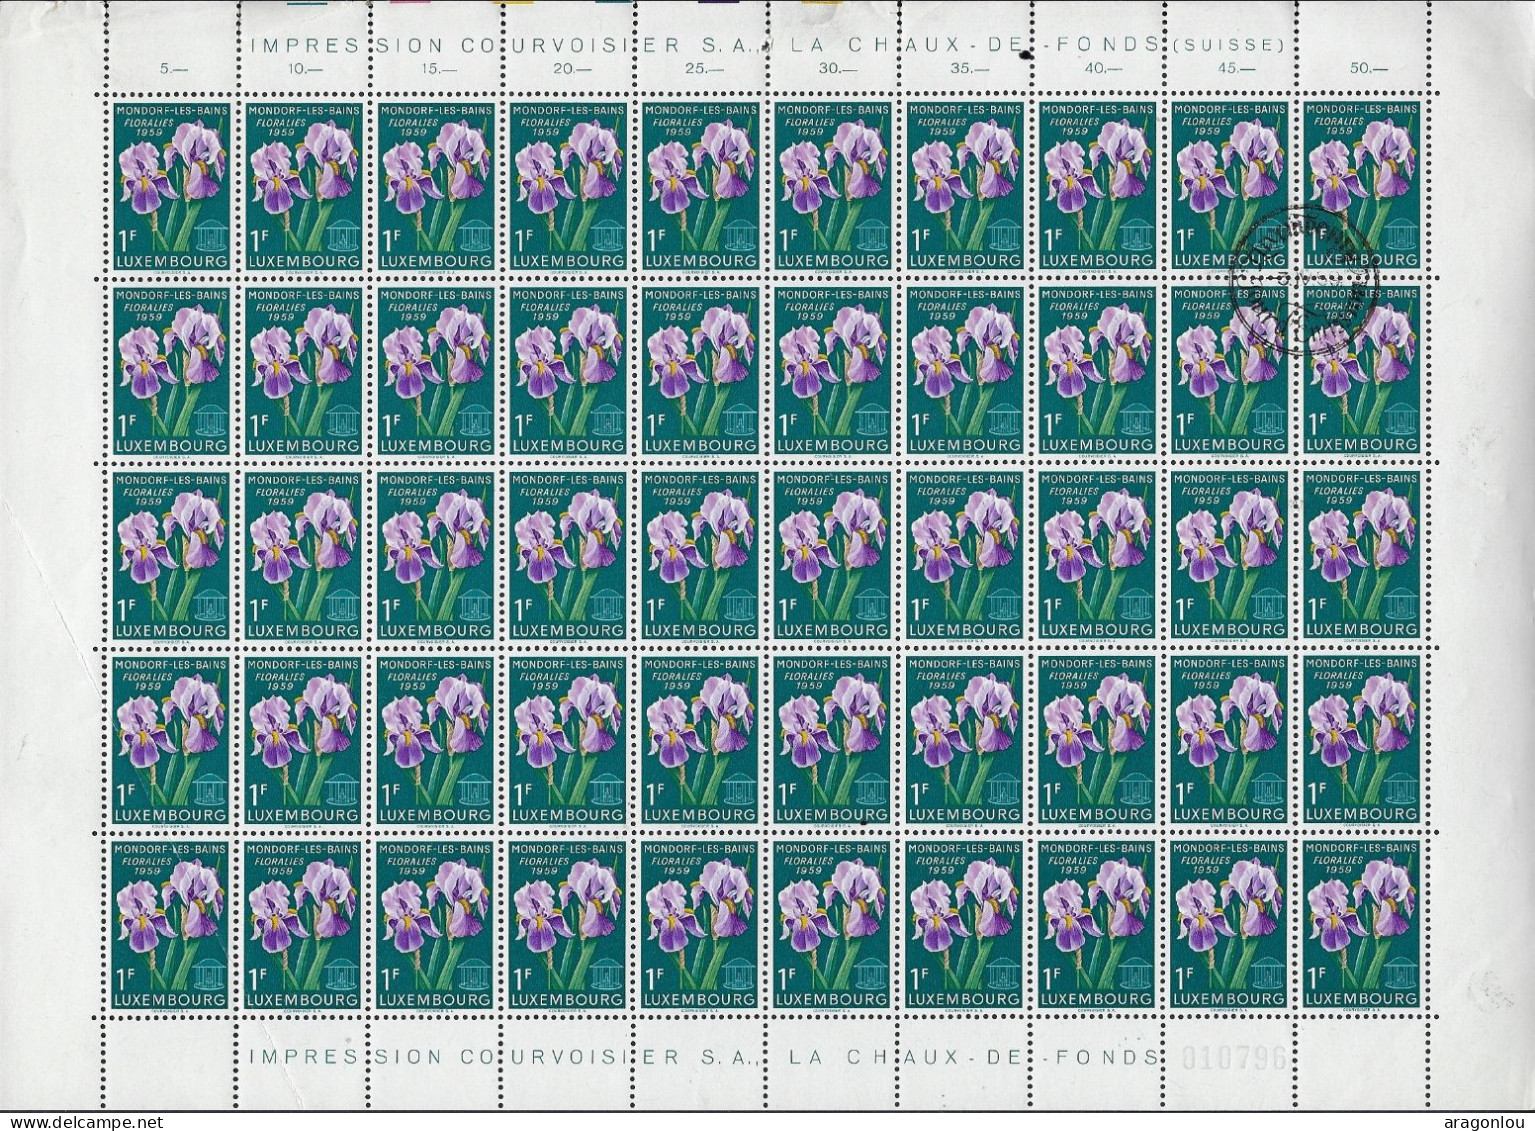 Luxembourg - Luxemburg -  Feuille à 100 Timbres 1Fr   Mondorf-les-Bains  Floralies   1959 - Ganze Bögen